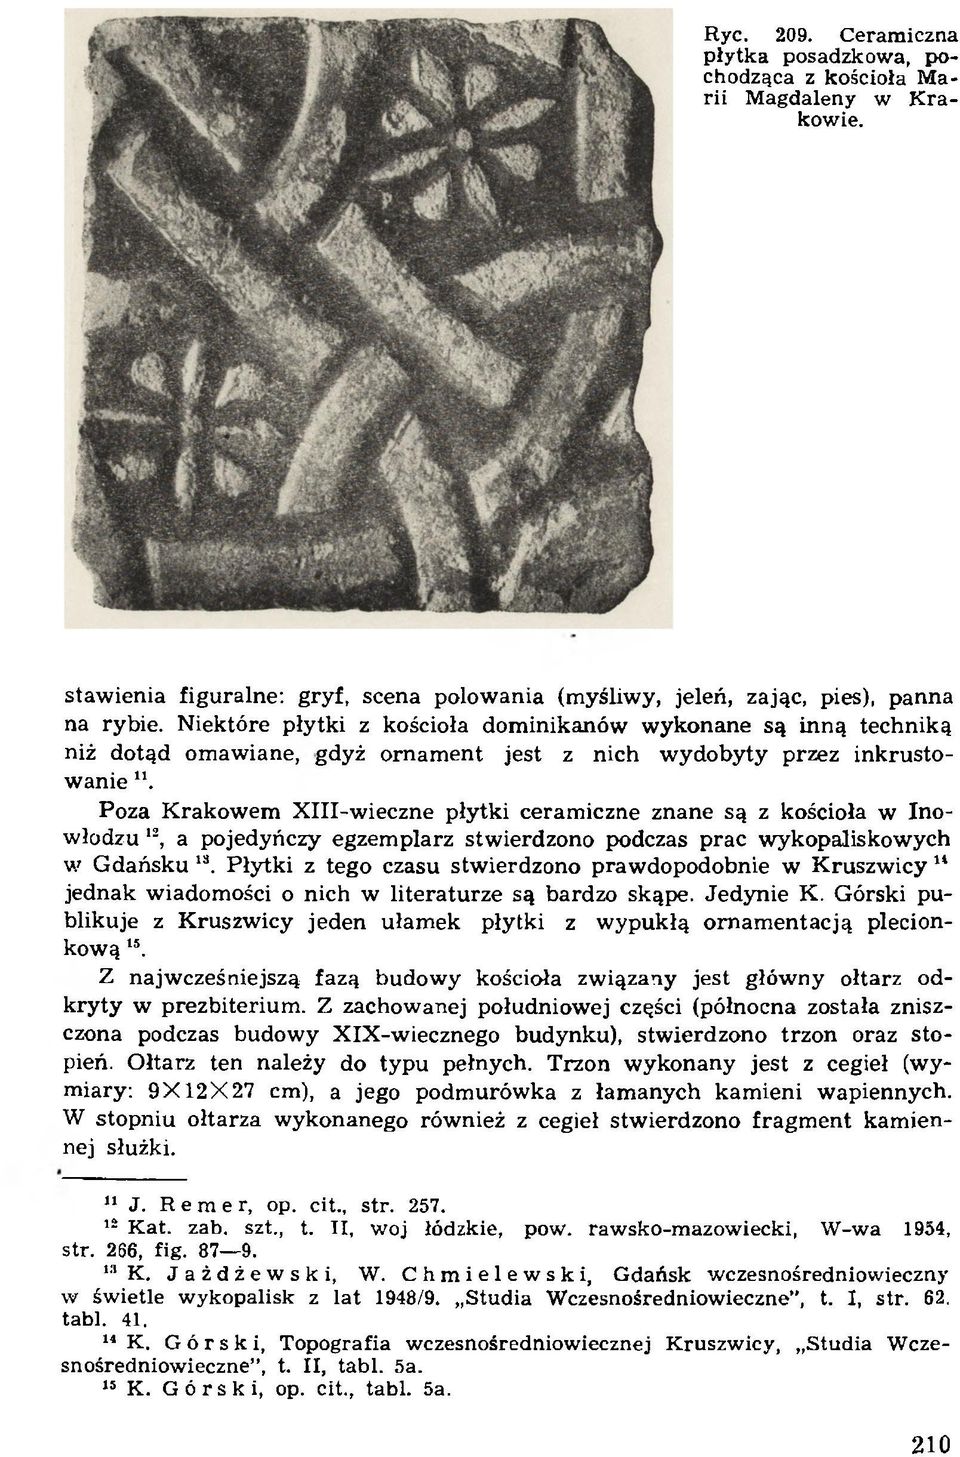 Poza K rakow em X III-w ieczne płytki ceram iczne znane są z kościoła w Inowłodzu 12, a pojedyńczy egzem plarz stw ierdzono podczas prac wykopaliskow ych w G dańsku 18.